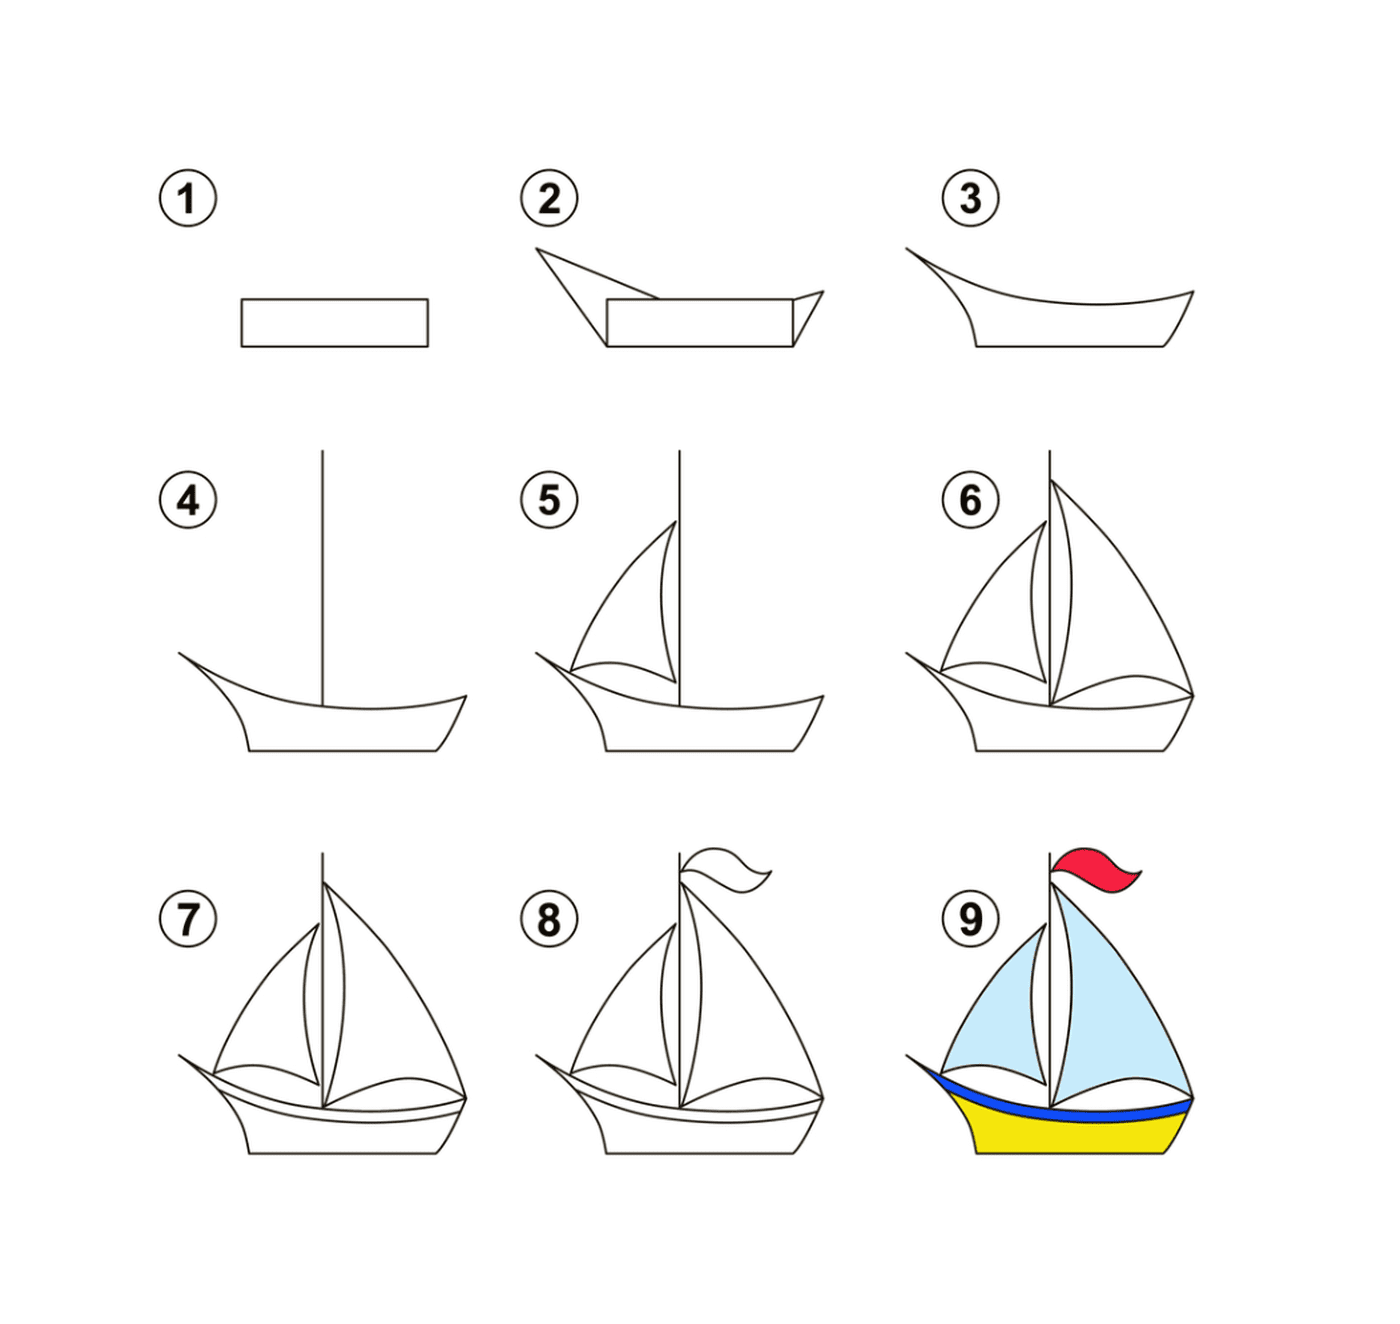  关于如何绘制帆船的逐步指示 